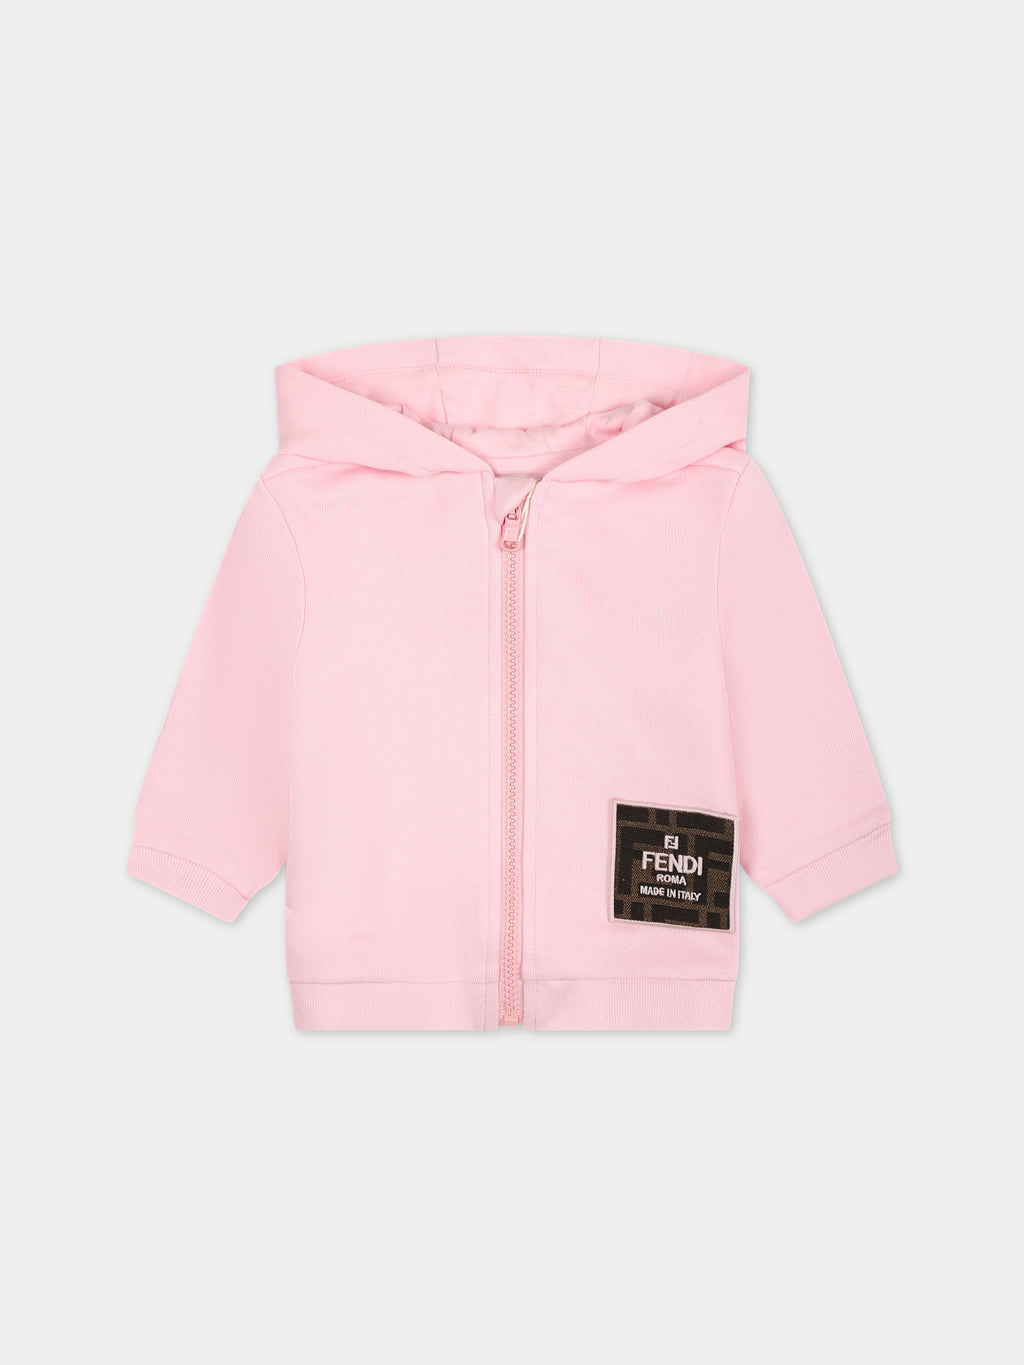 Pink sweatshirt for baby girl with logo